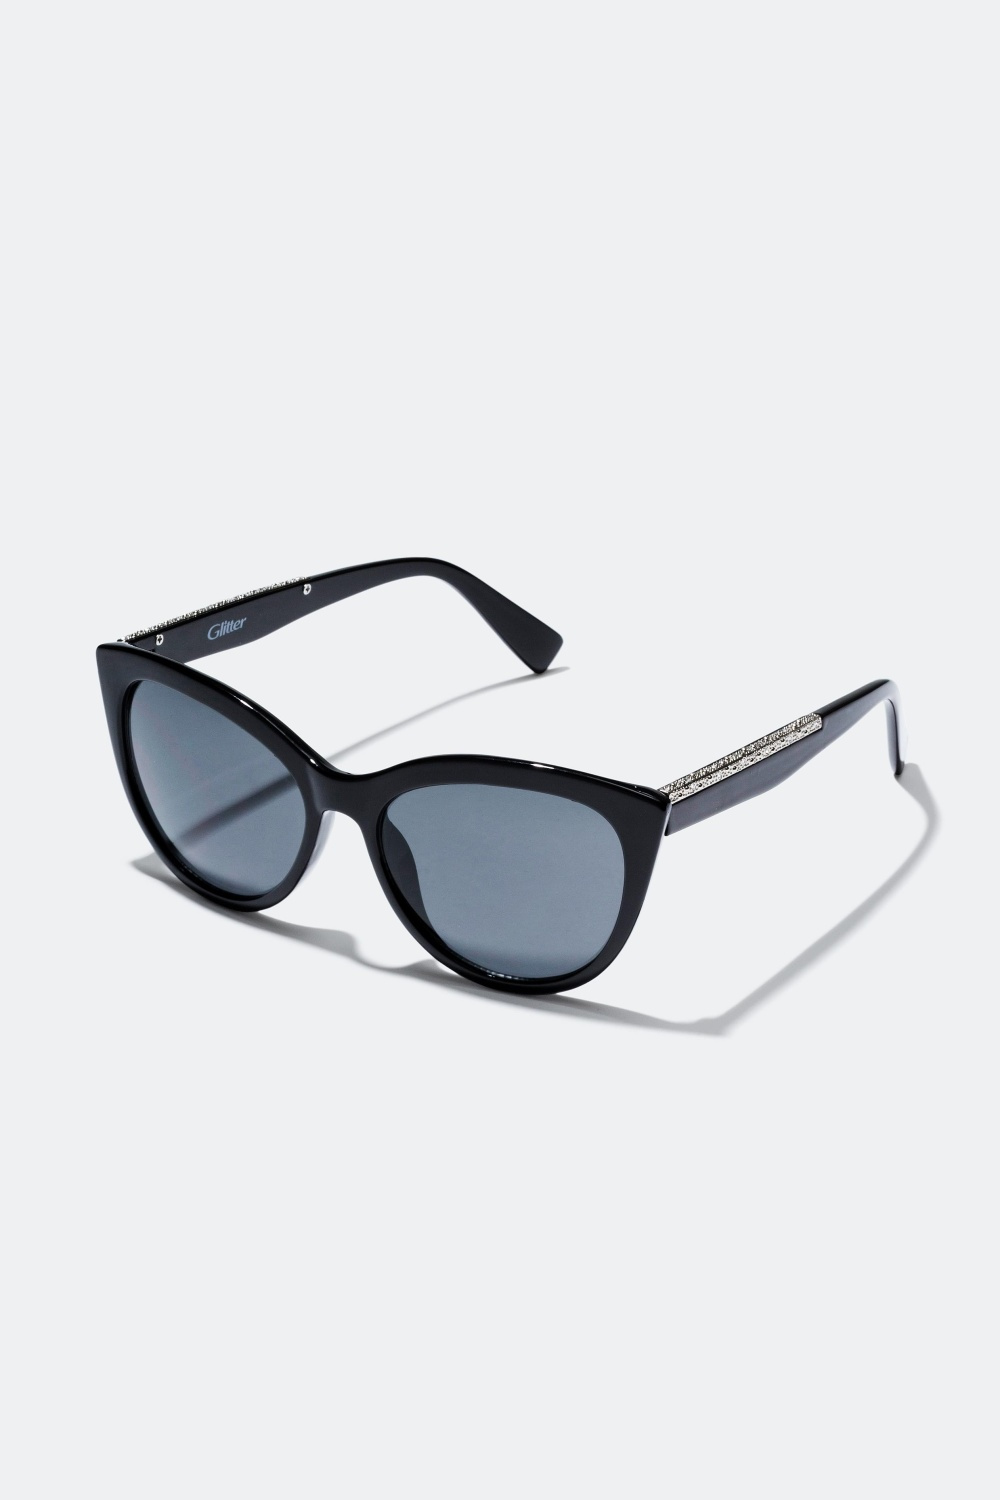 Shop solbriller online på